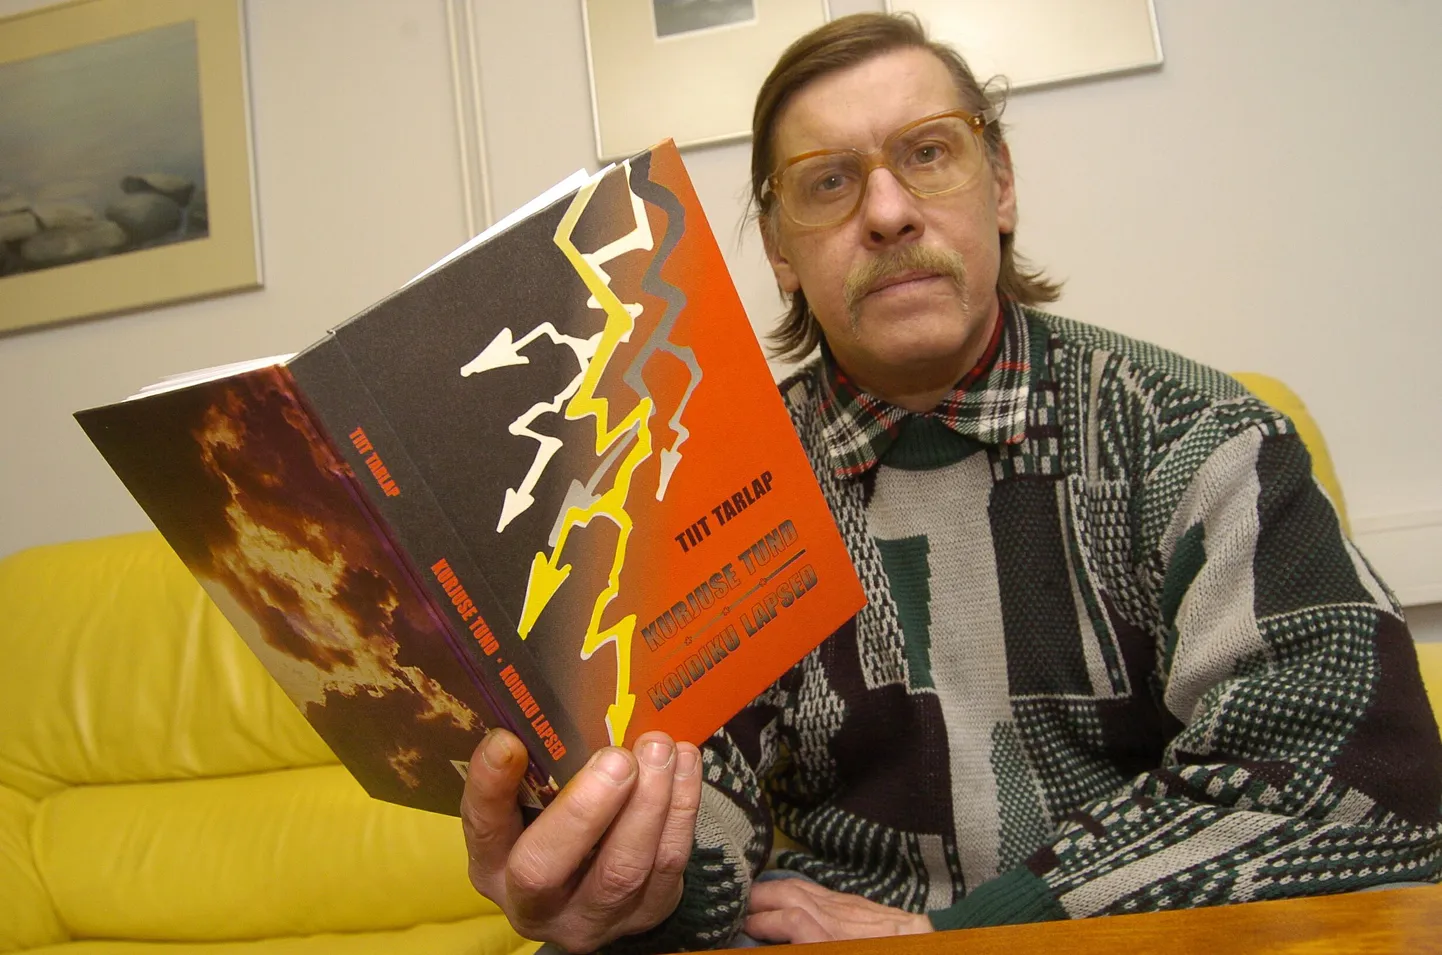 Tiit Tarlap oma raamatuga, mille kaante vahel kaks romaani – "Kurjuse tund" ja "Koidiku lapsed", Pärnu Postimehe toimetuses.